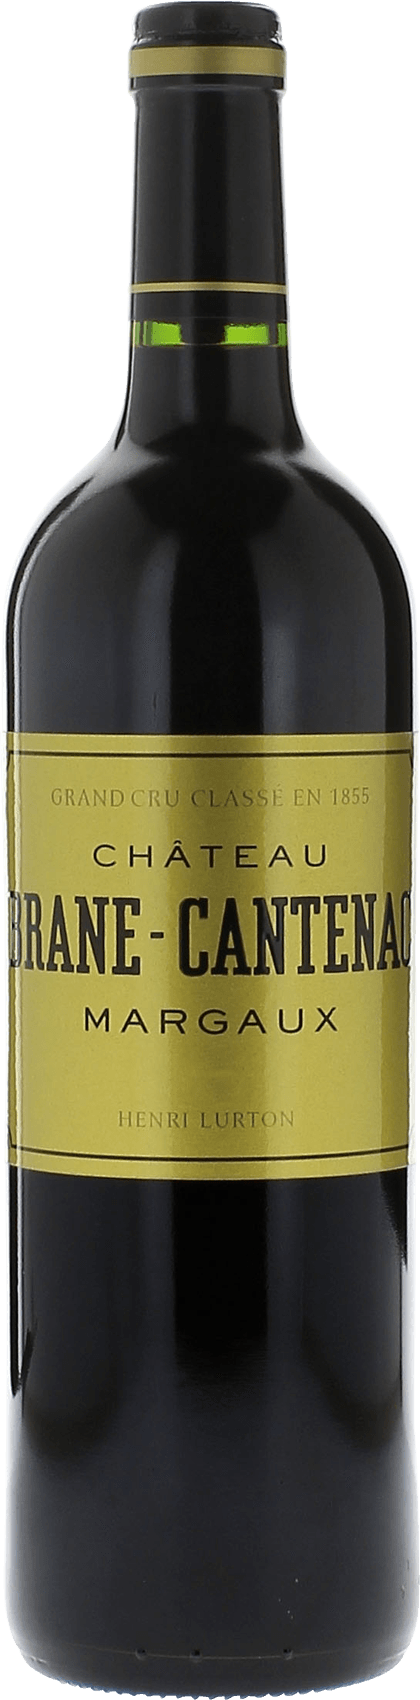 Brane cantenac 1999 2me Grand cru class Margaux, Bordeaux rouge